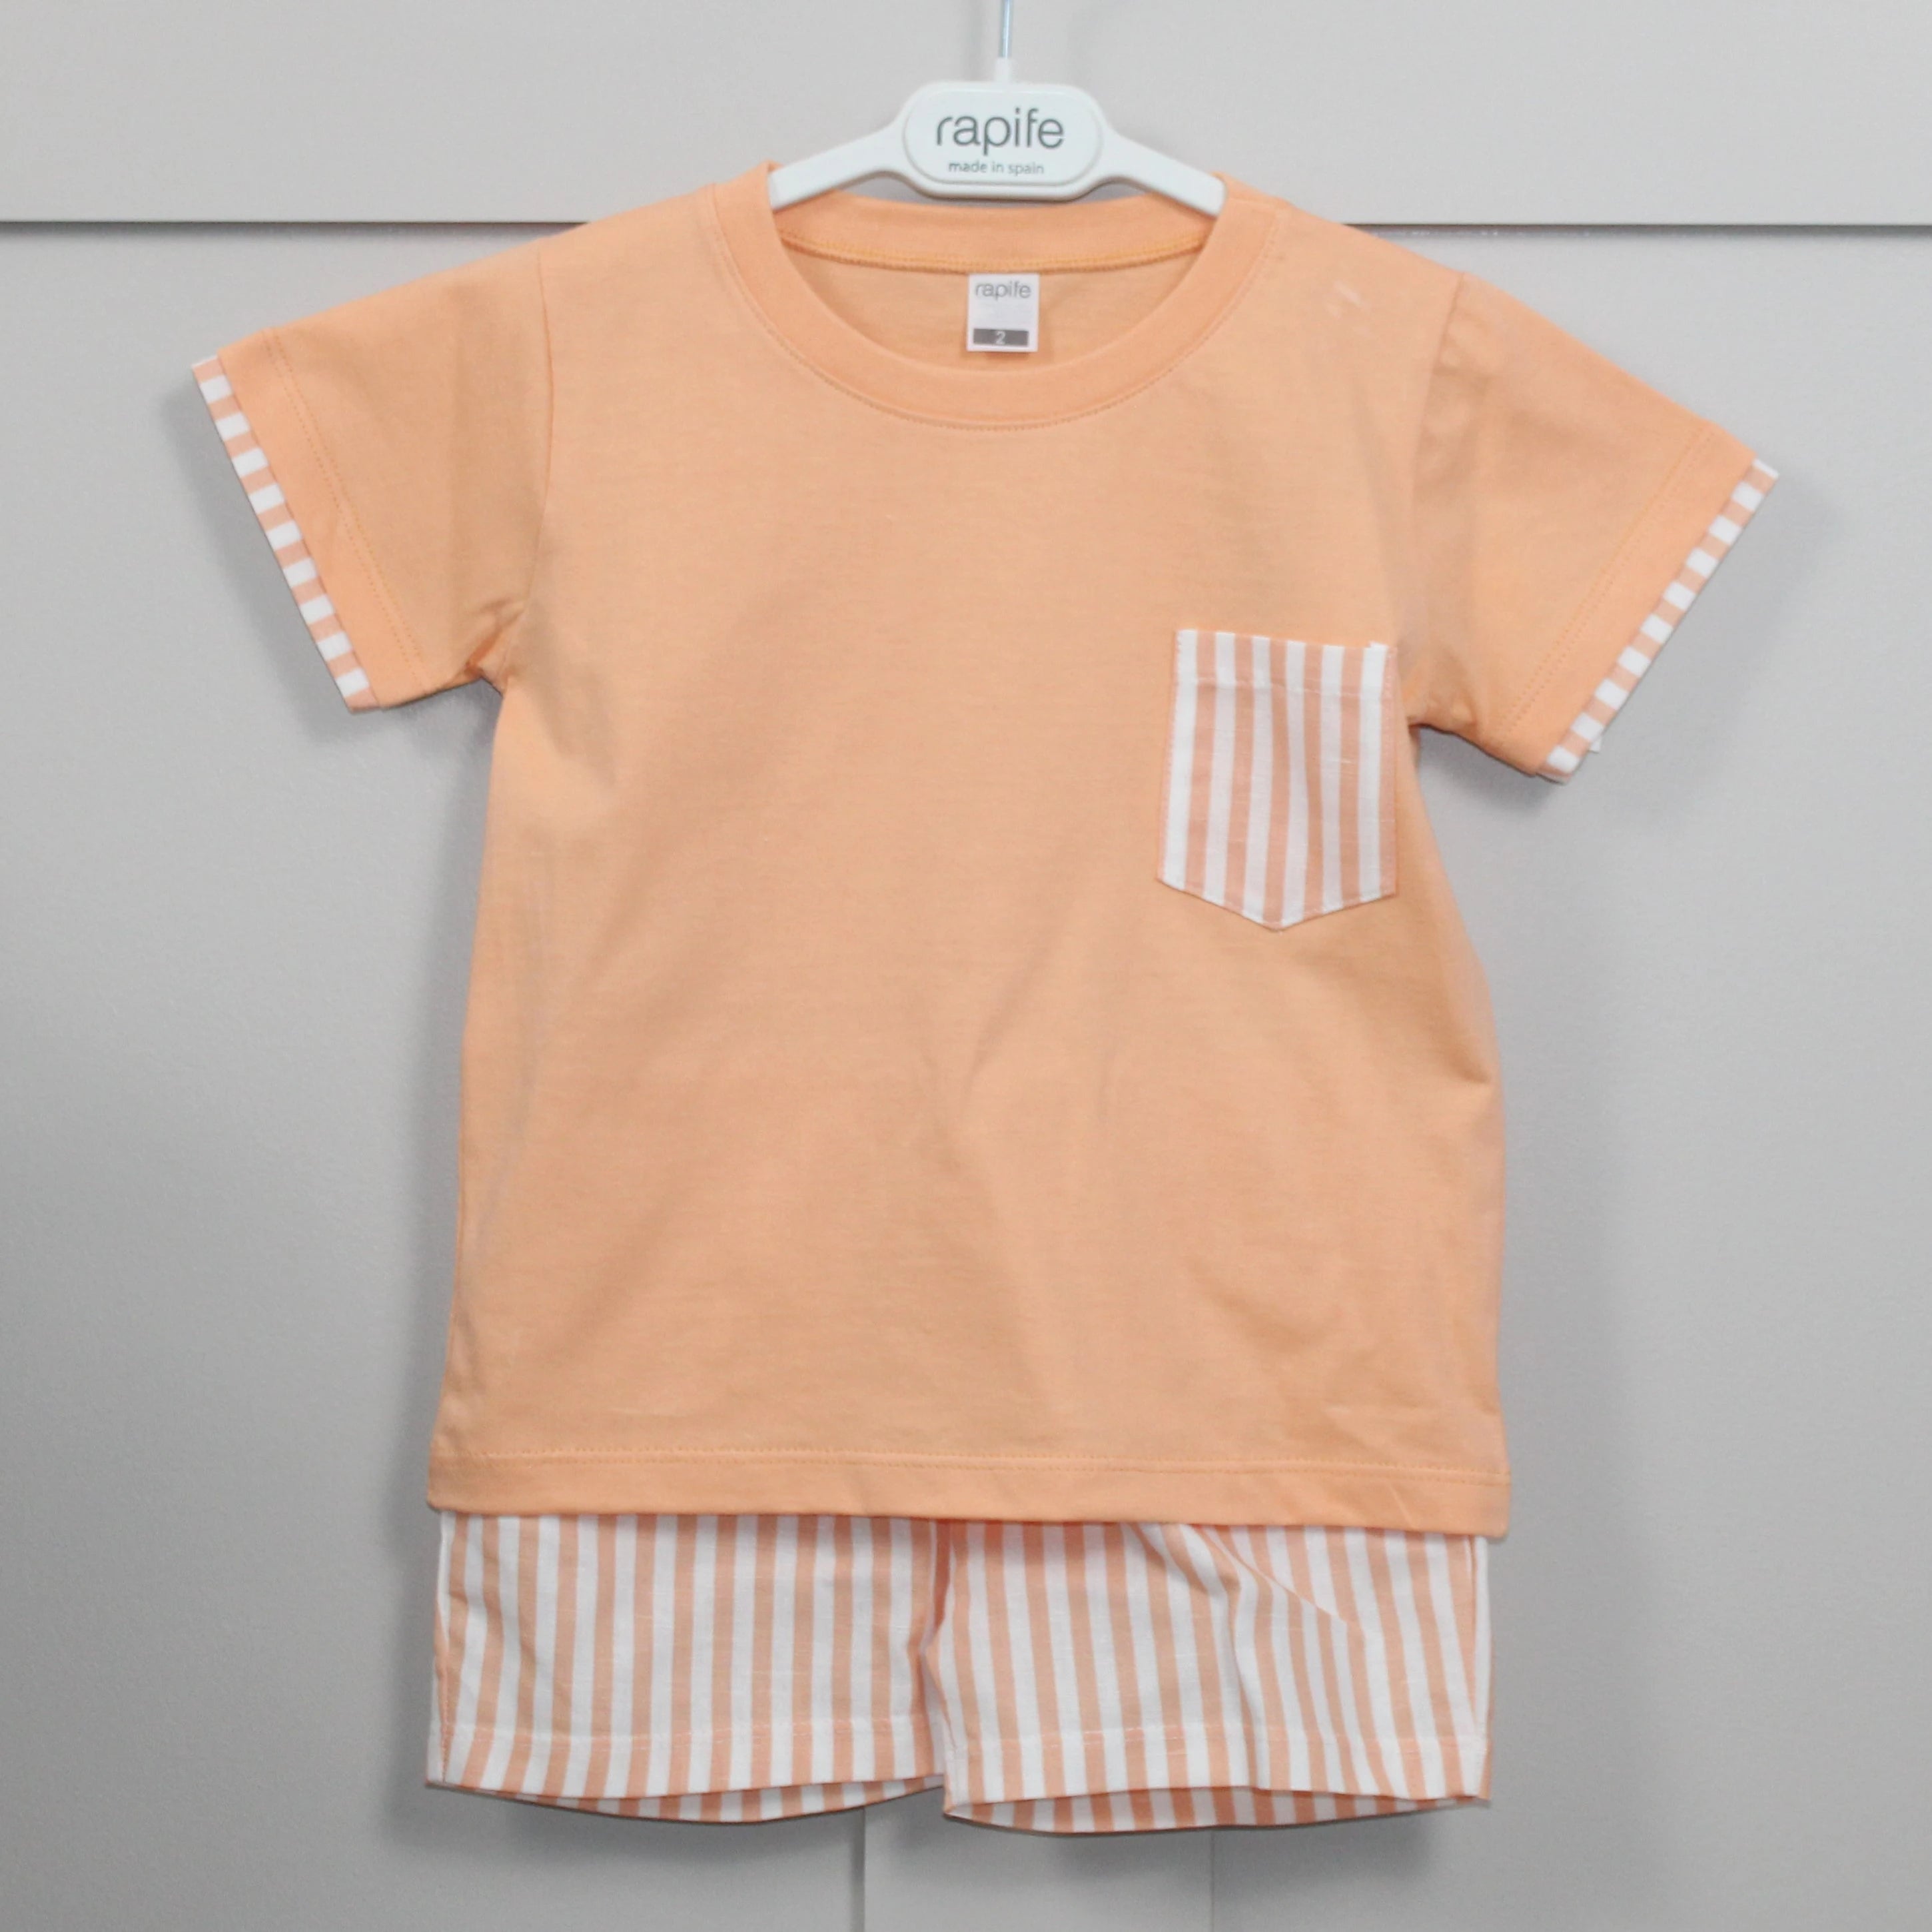 rapife Orange T-Shirt and Shorts